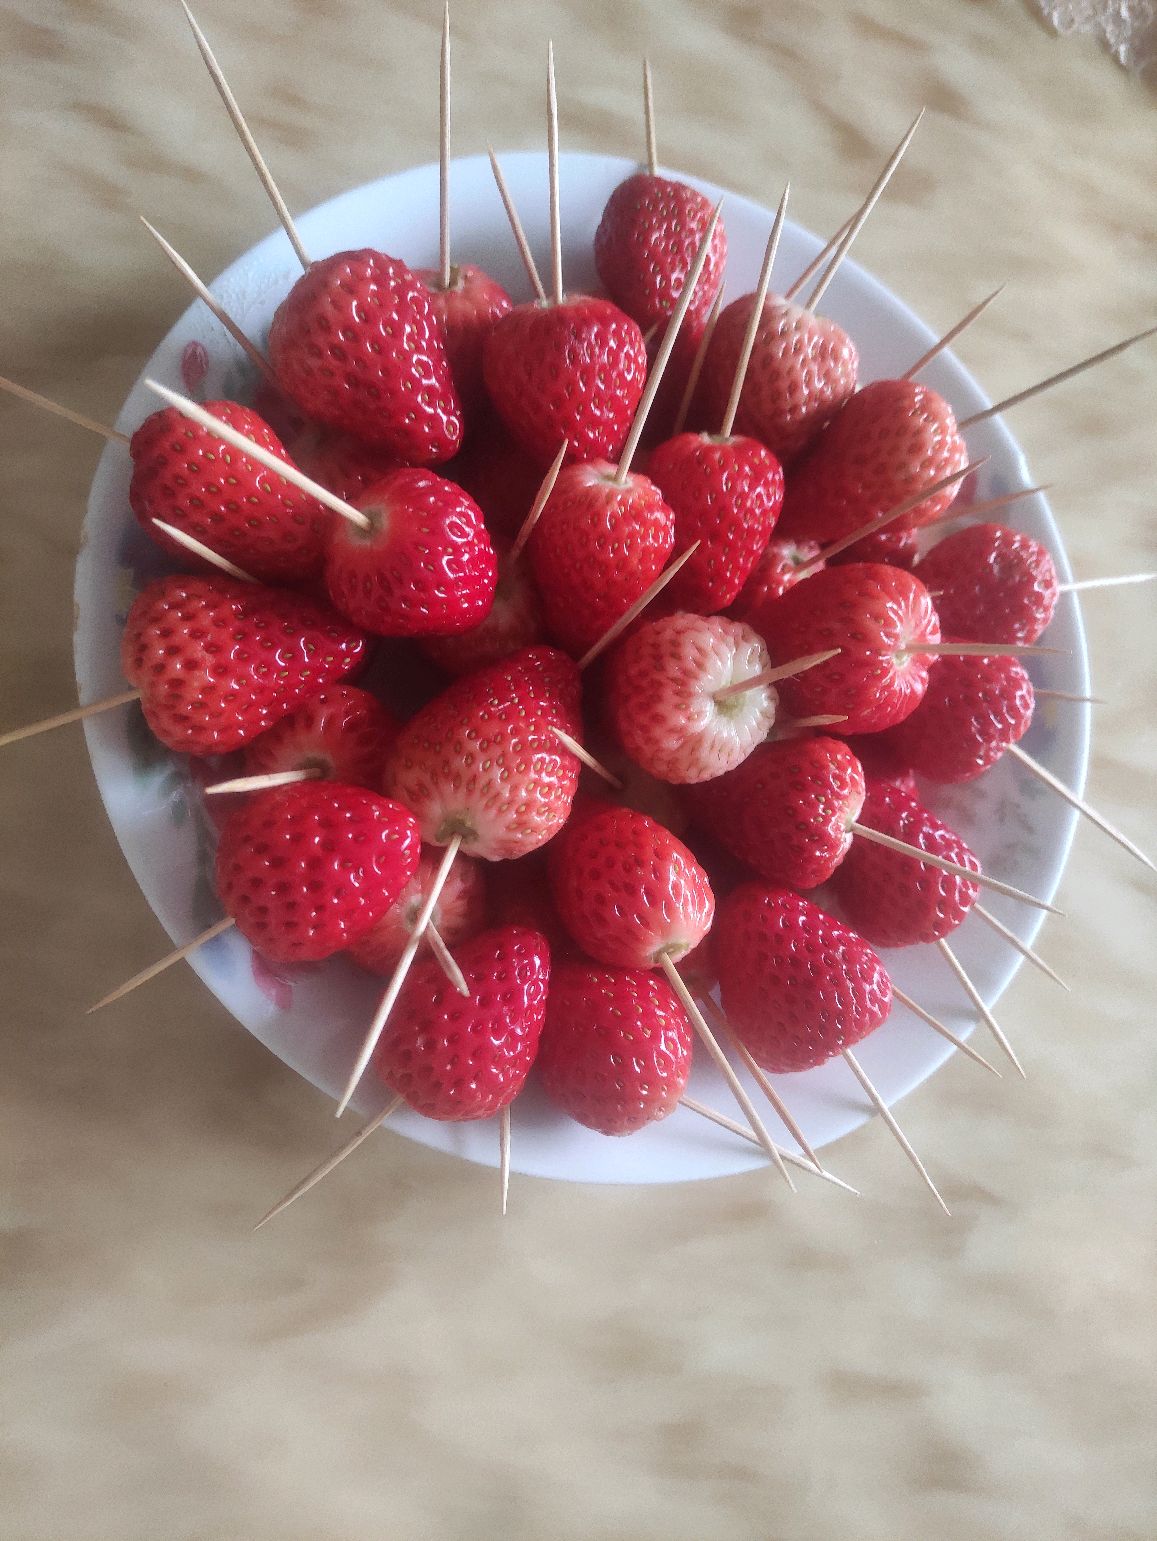 冰糖草莓🍓（从未失败过）的做法_冰糖草莓🍓（从未失败过）怎么做_冰糖草莓🍓（从未失败过）的家常做法_goh【心食谱】